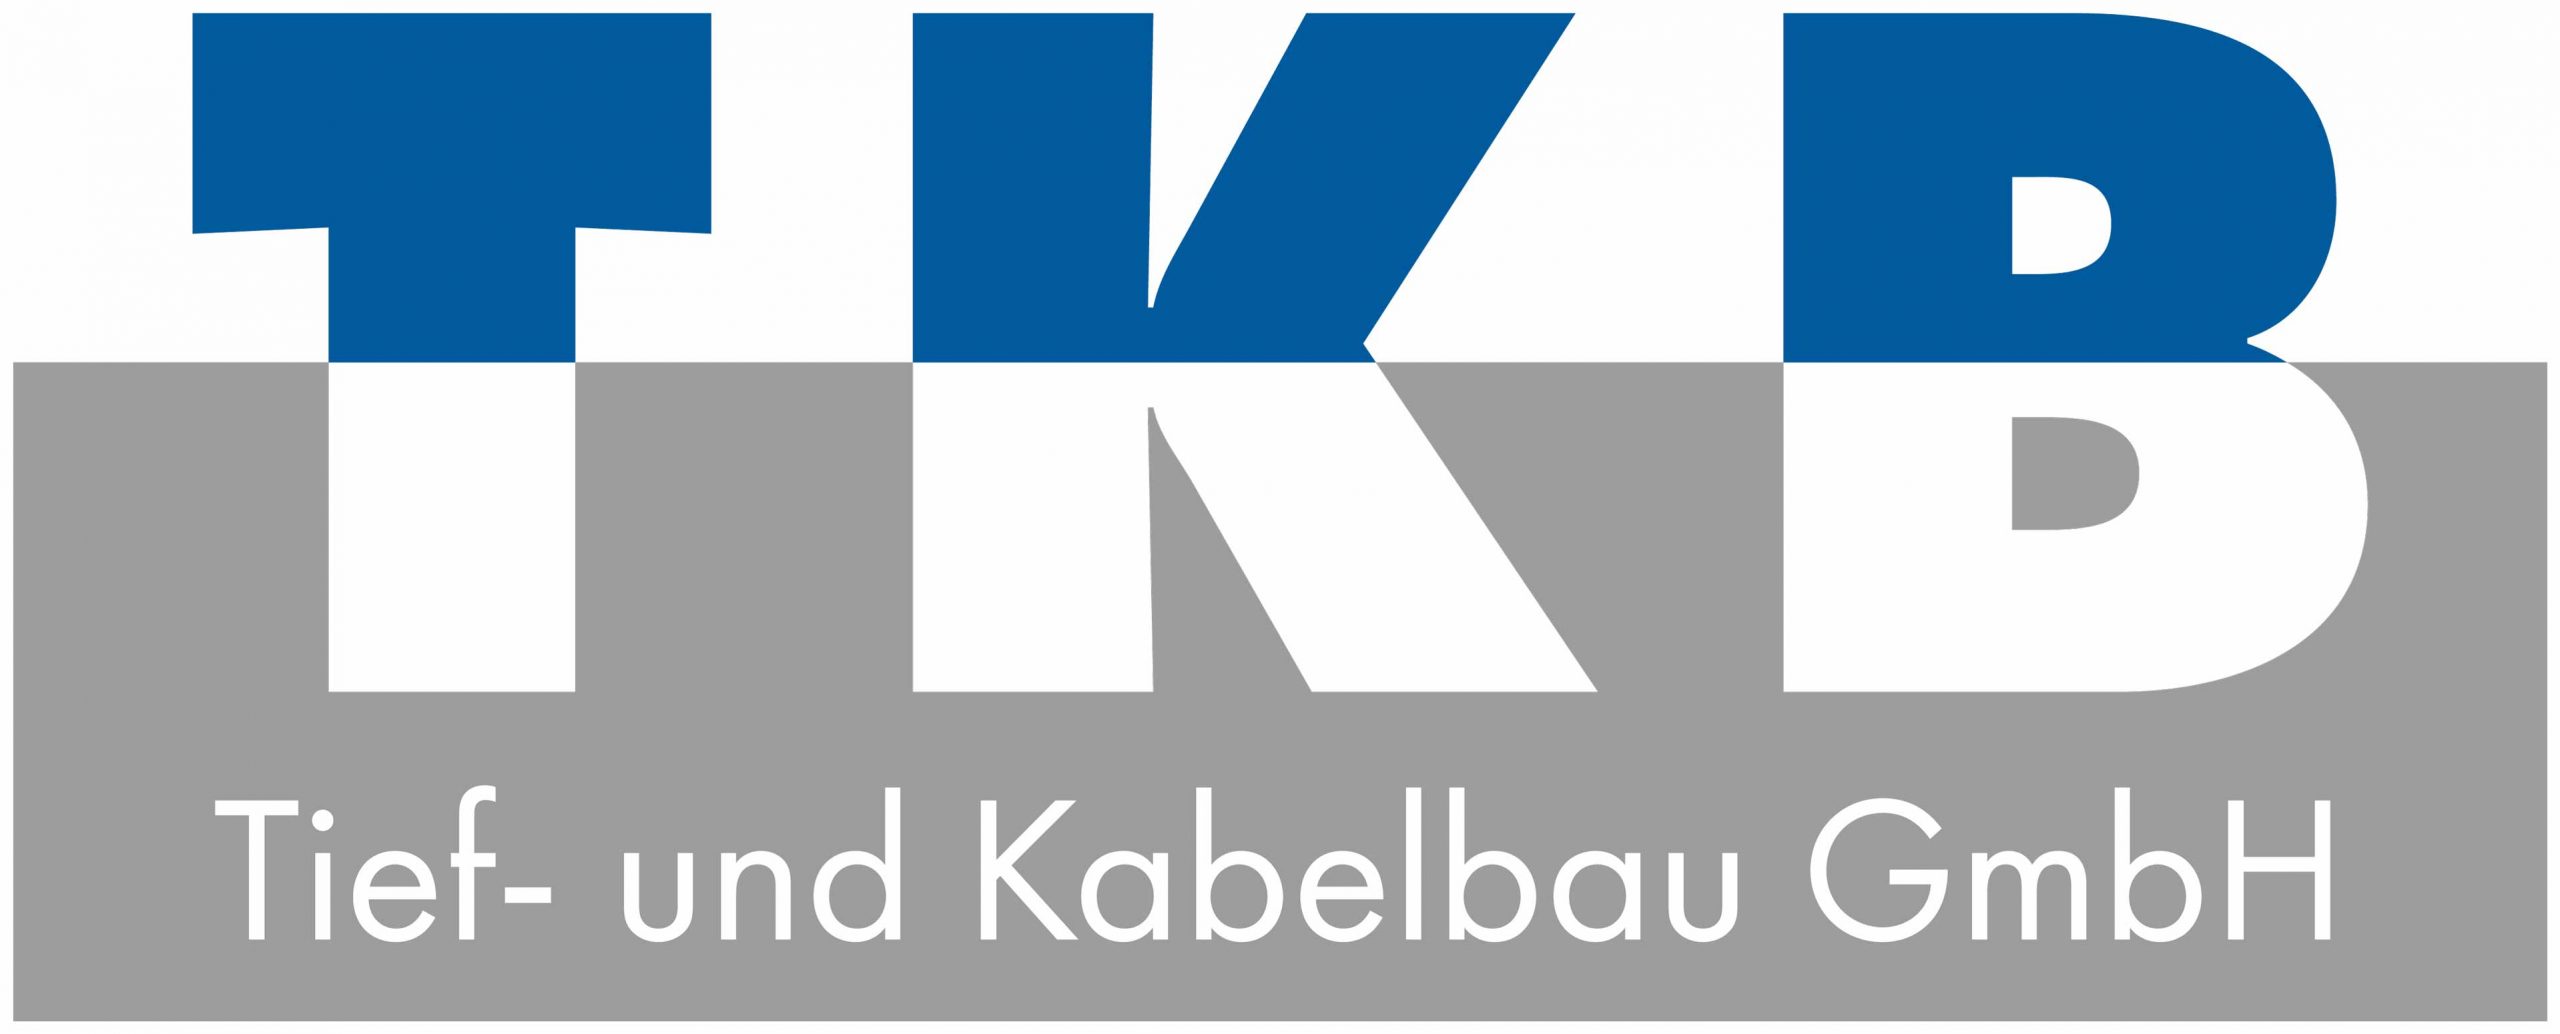 TKB Tief- und Kabelbau GmbH